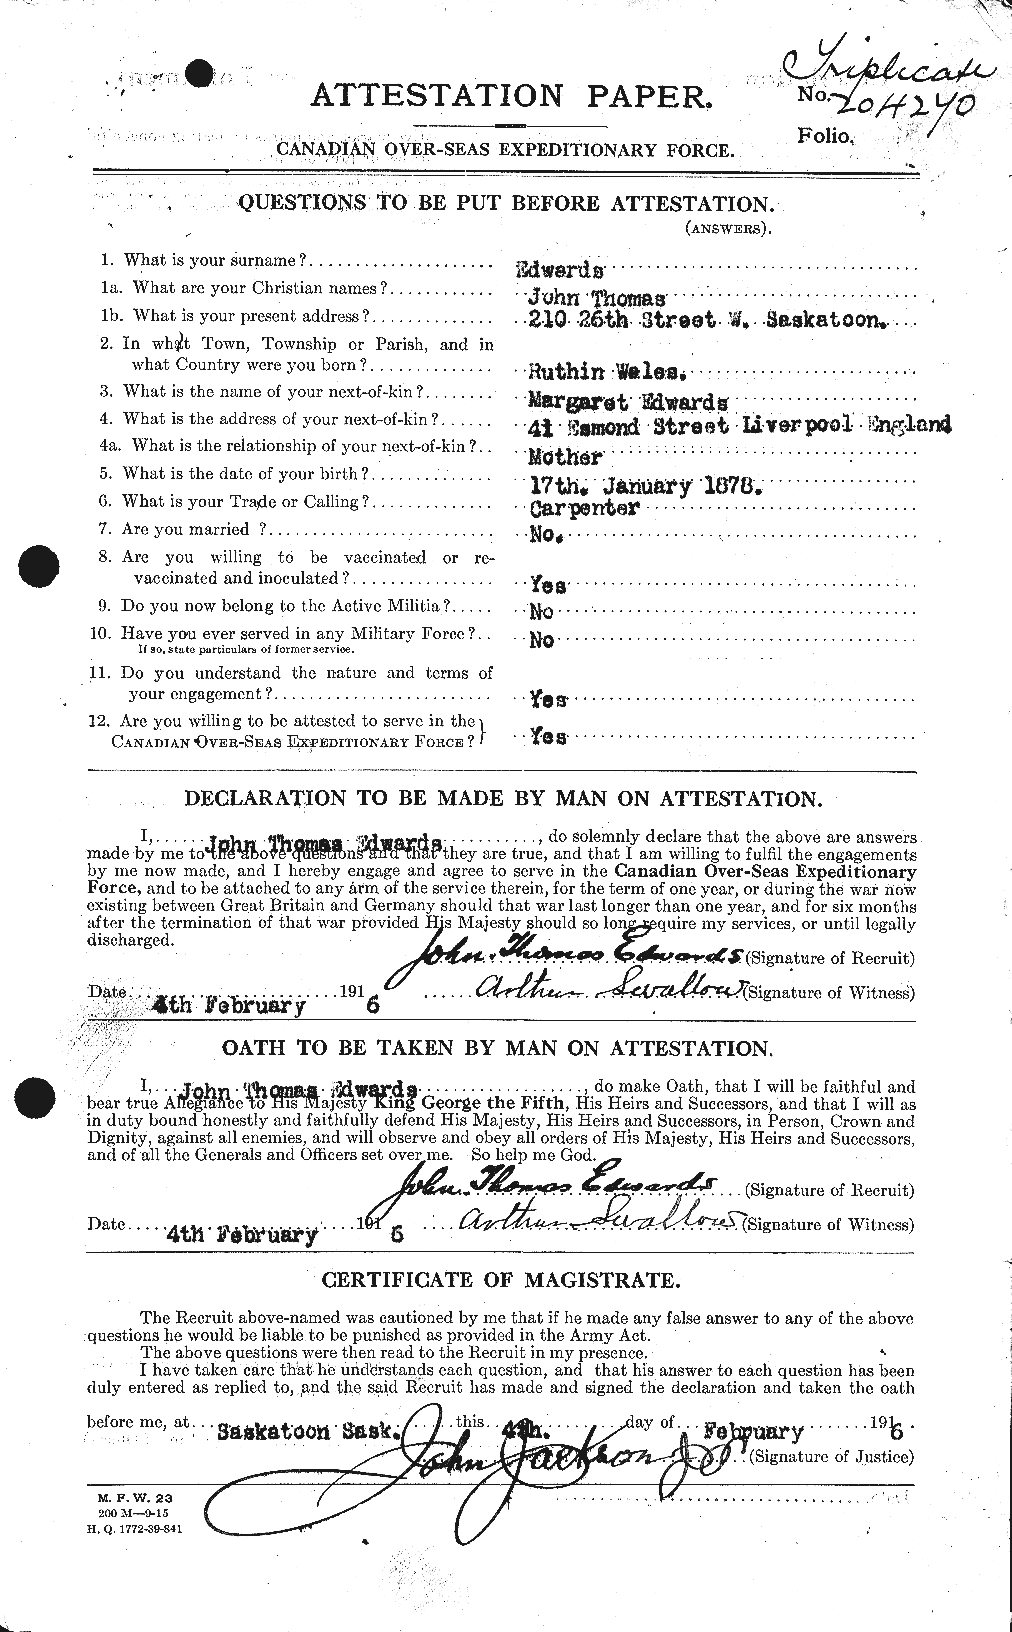 Dossiers du Personnel de la Première Guerre mondiale - CEC 310157a